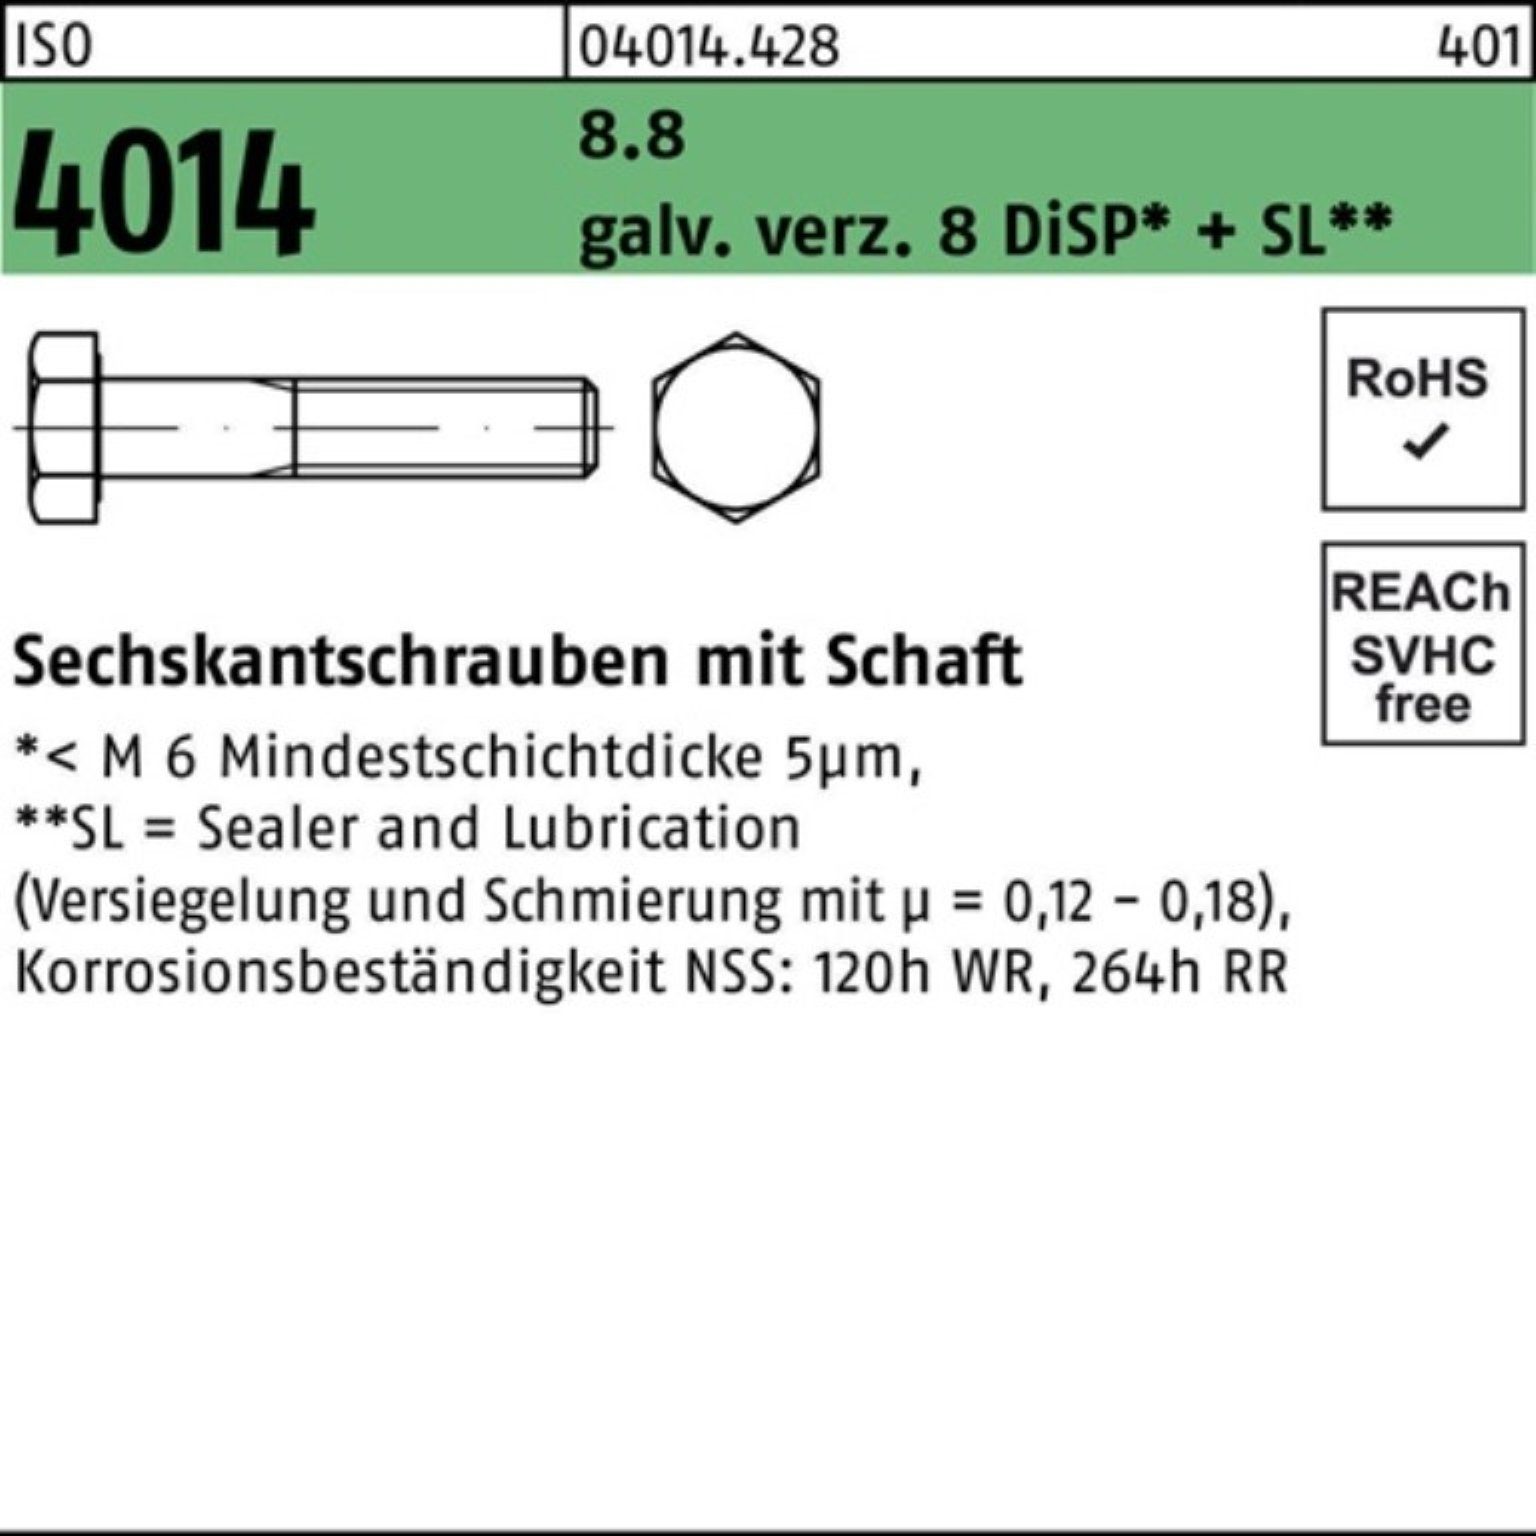 Bufab Sechskantschraube 100er Pack Sechskantschraube ISO 4014 Schaft M14x140 8.8 galv.verz. 8